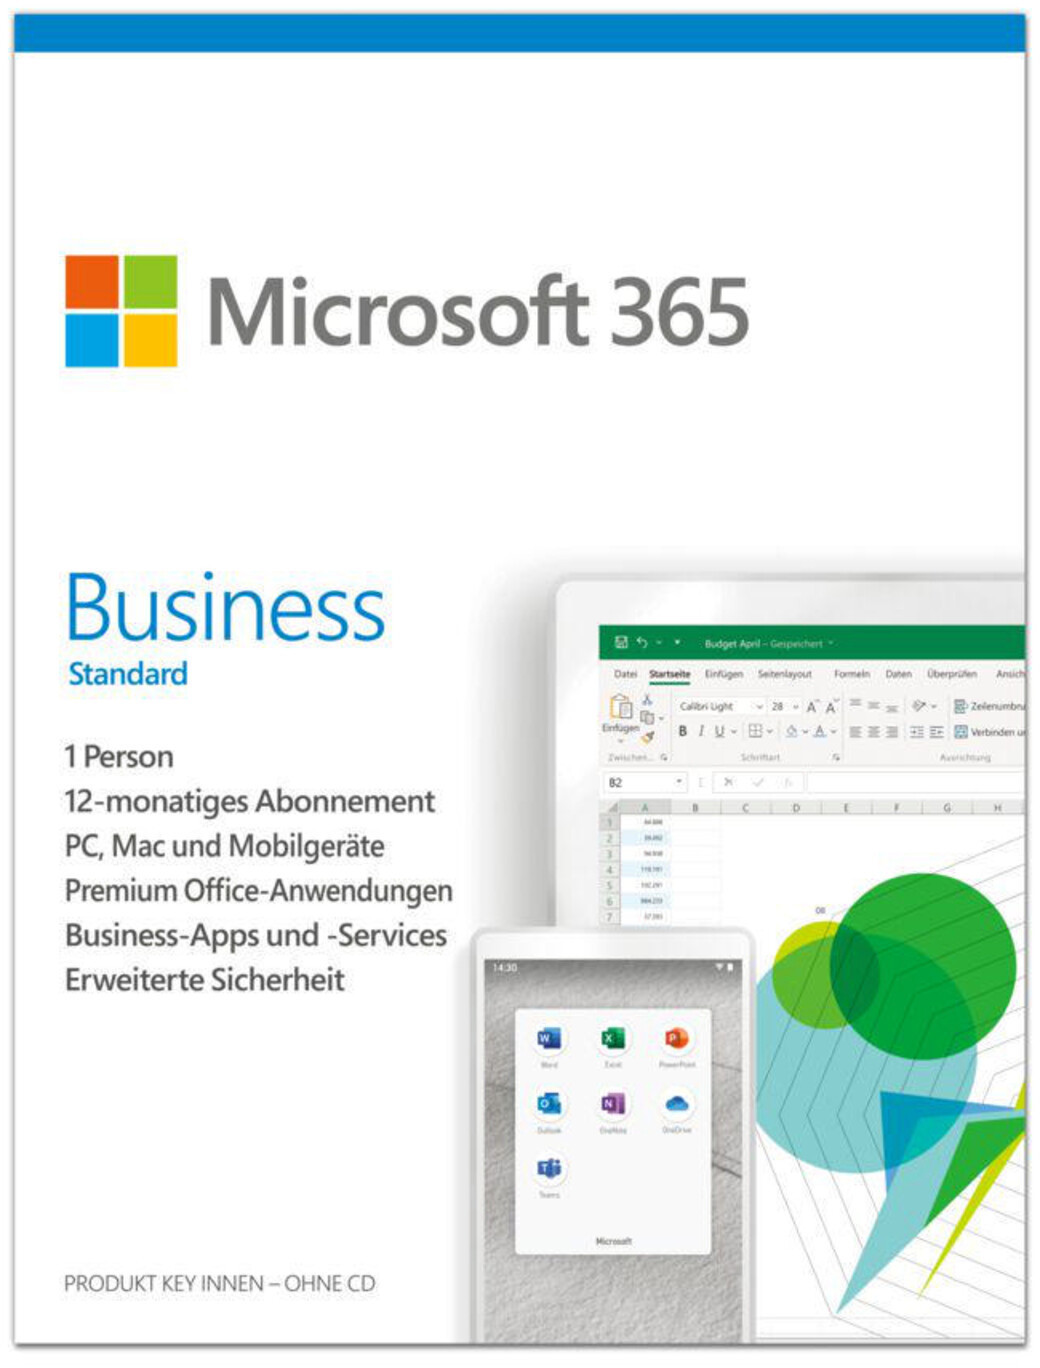 Microsoft 365 Business Standard (DE) (Februar | ab 109,79 bei Preisvergleich € 2024 Preise)